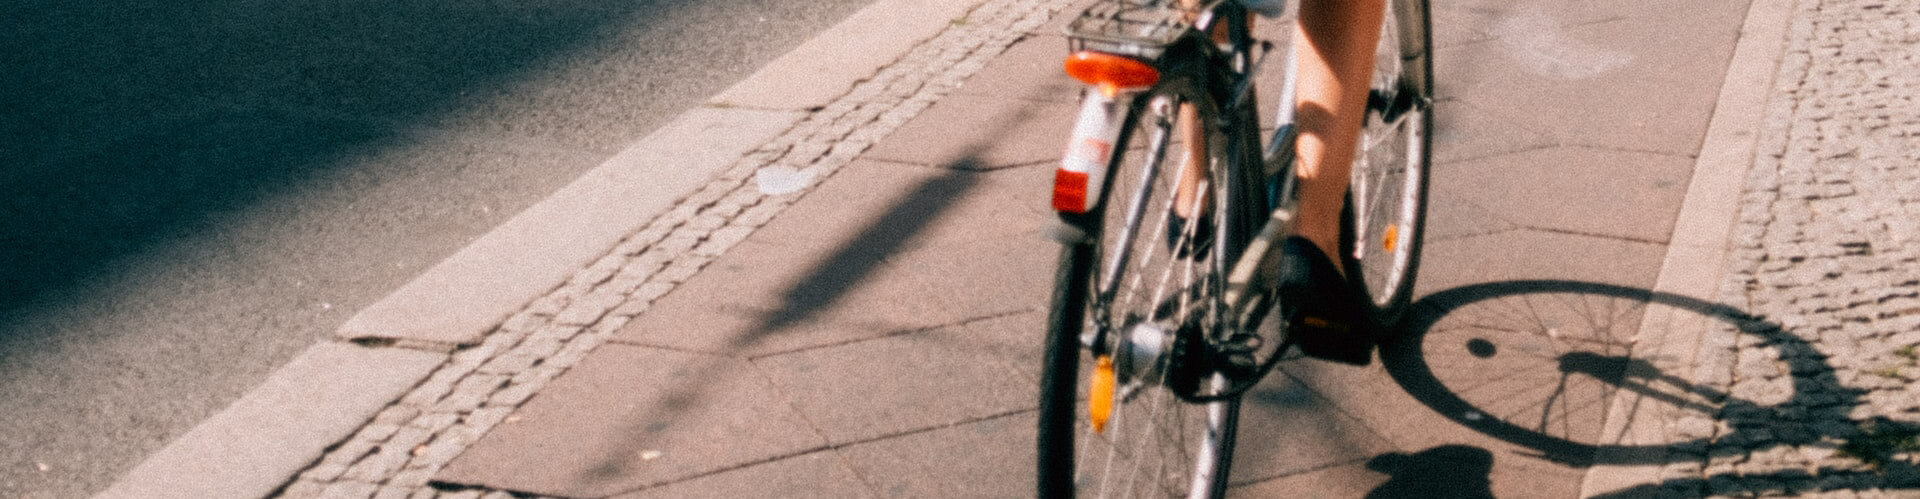 Gemeente aansprakelijk voor eenzijdig fietsongeval door putdeksel | LetselPro